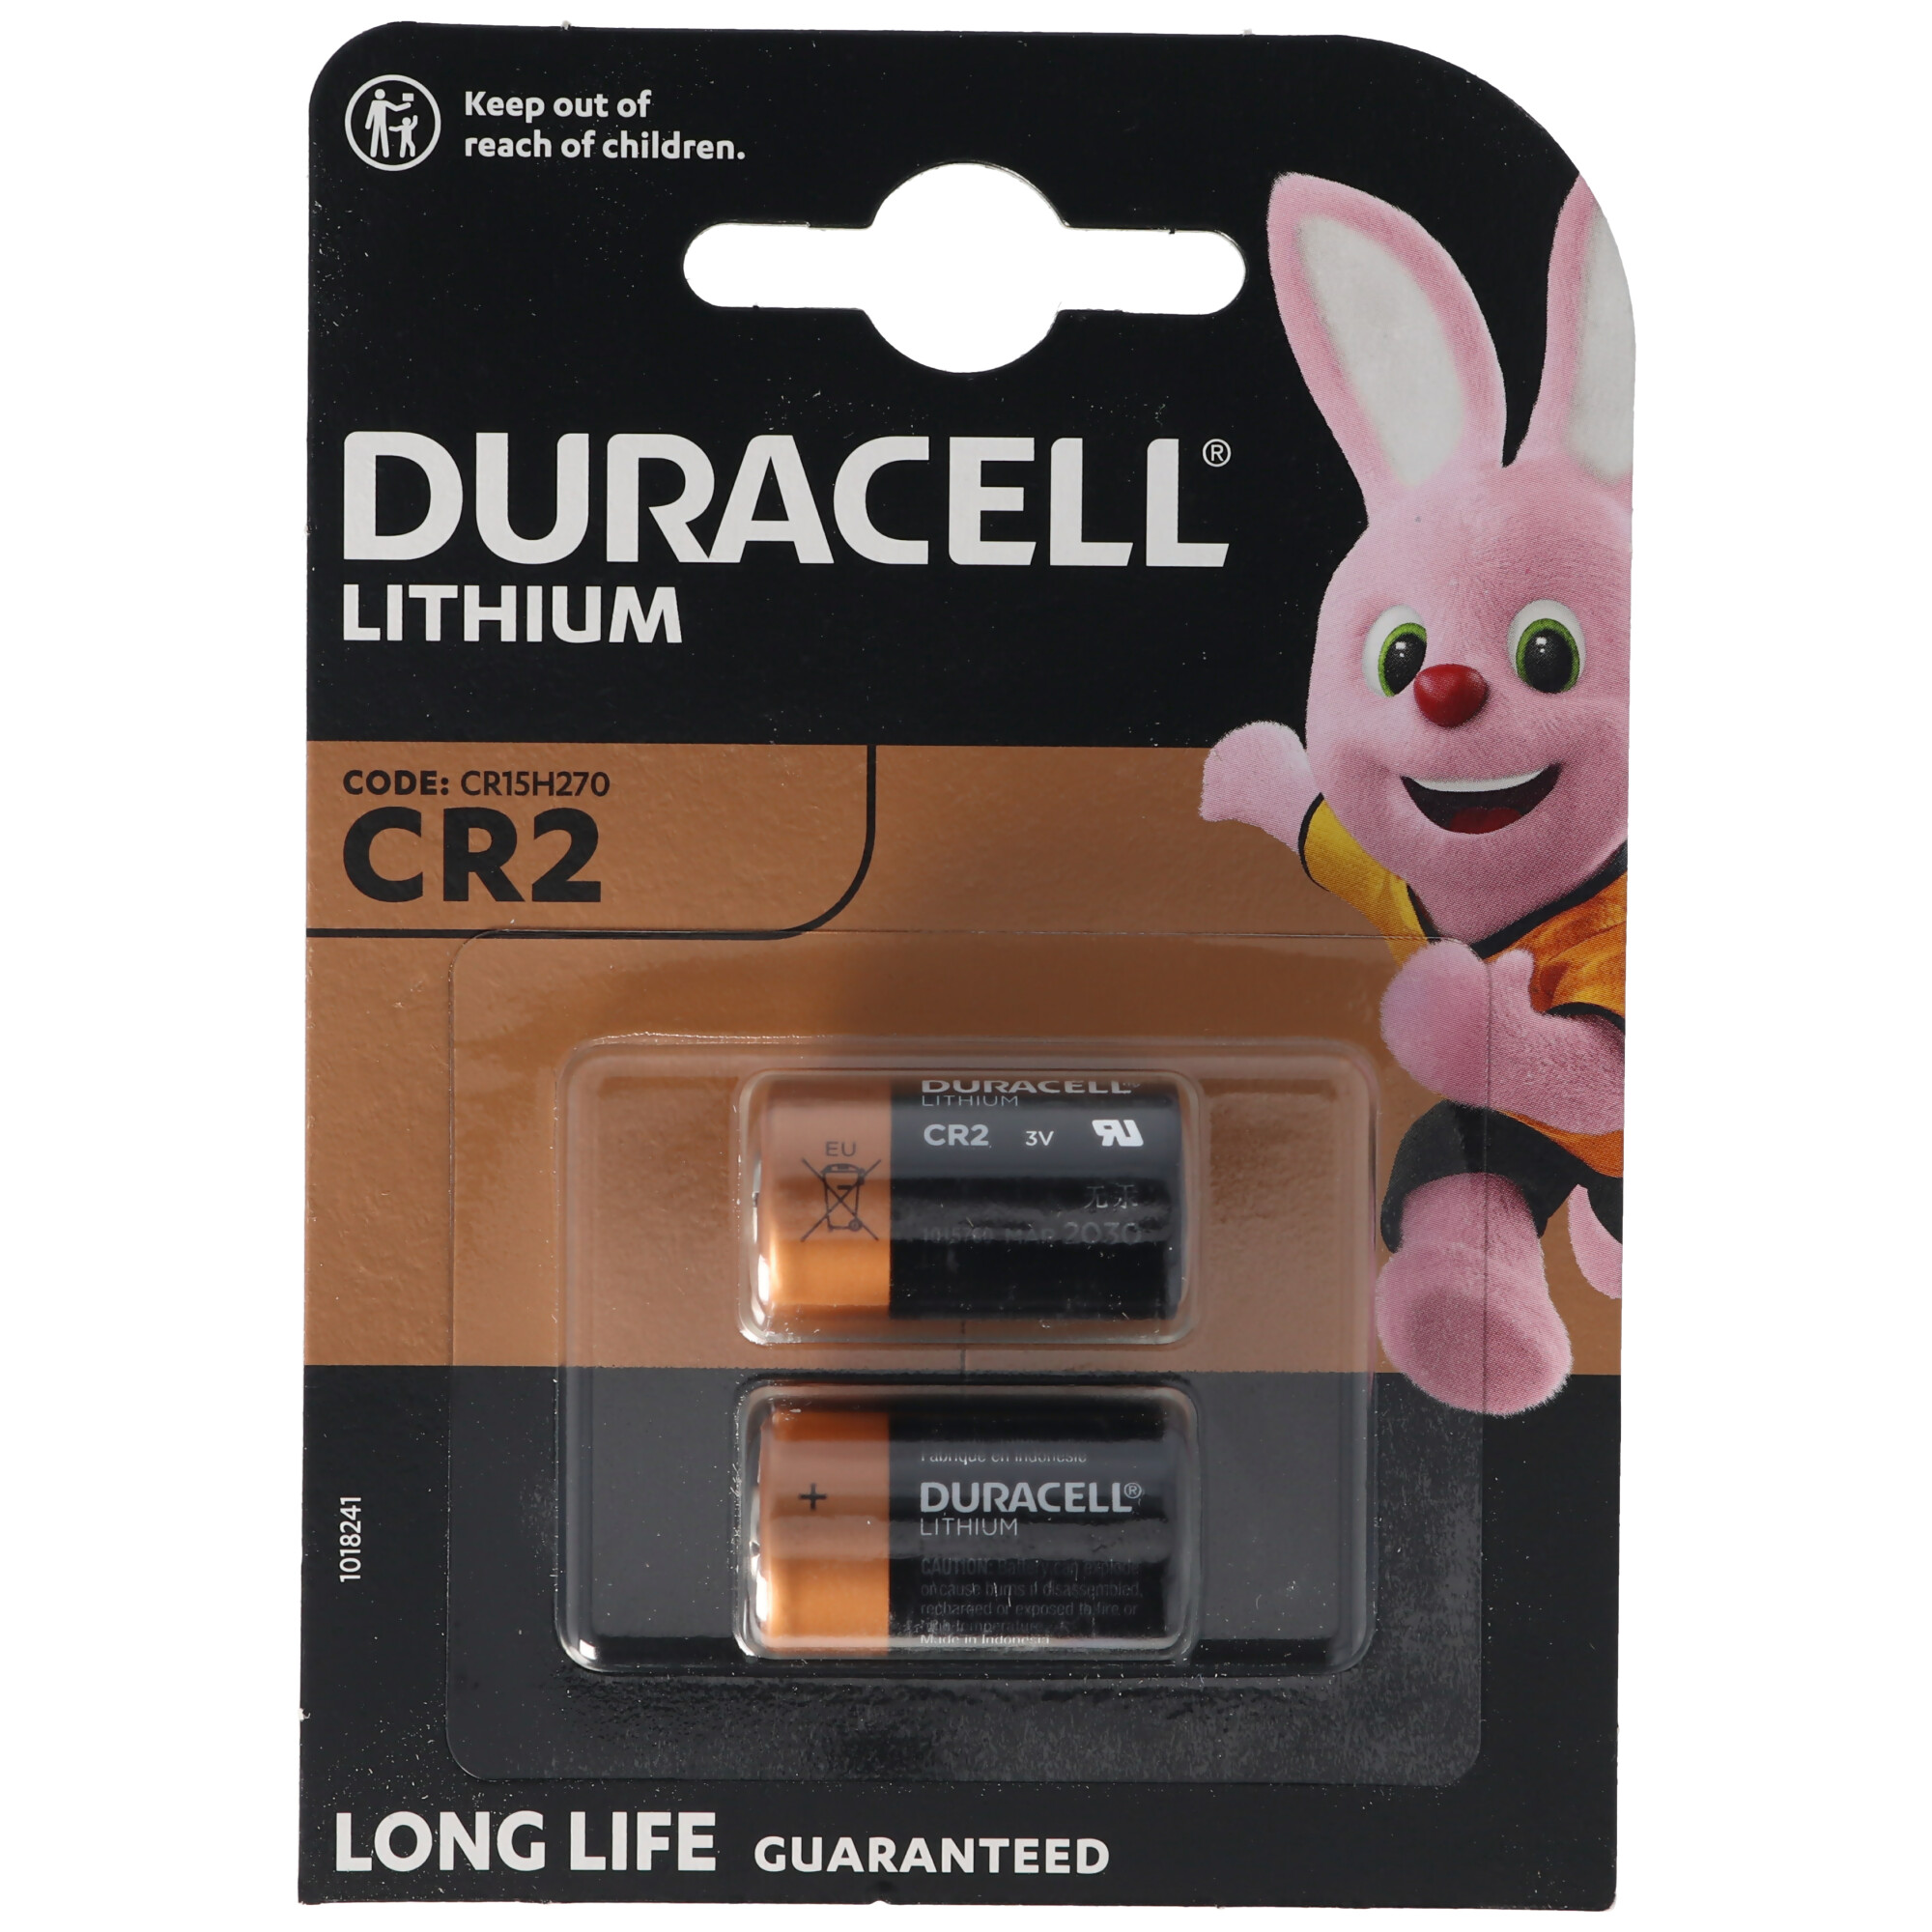 Duracell Photobatterie CR2 Ultra Lithium 3Vmax. 850mAh im 2er Blister, CR15H270